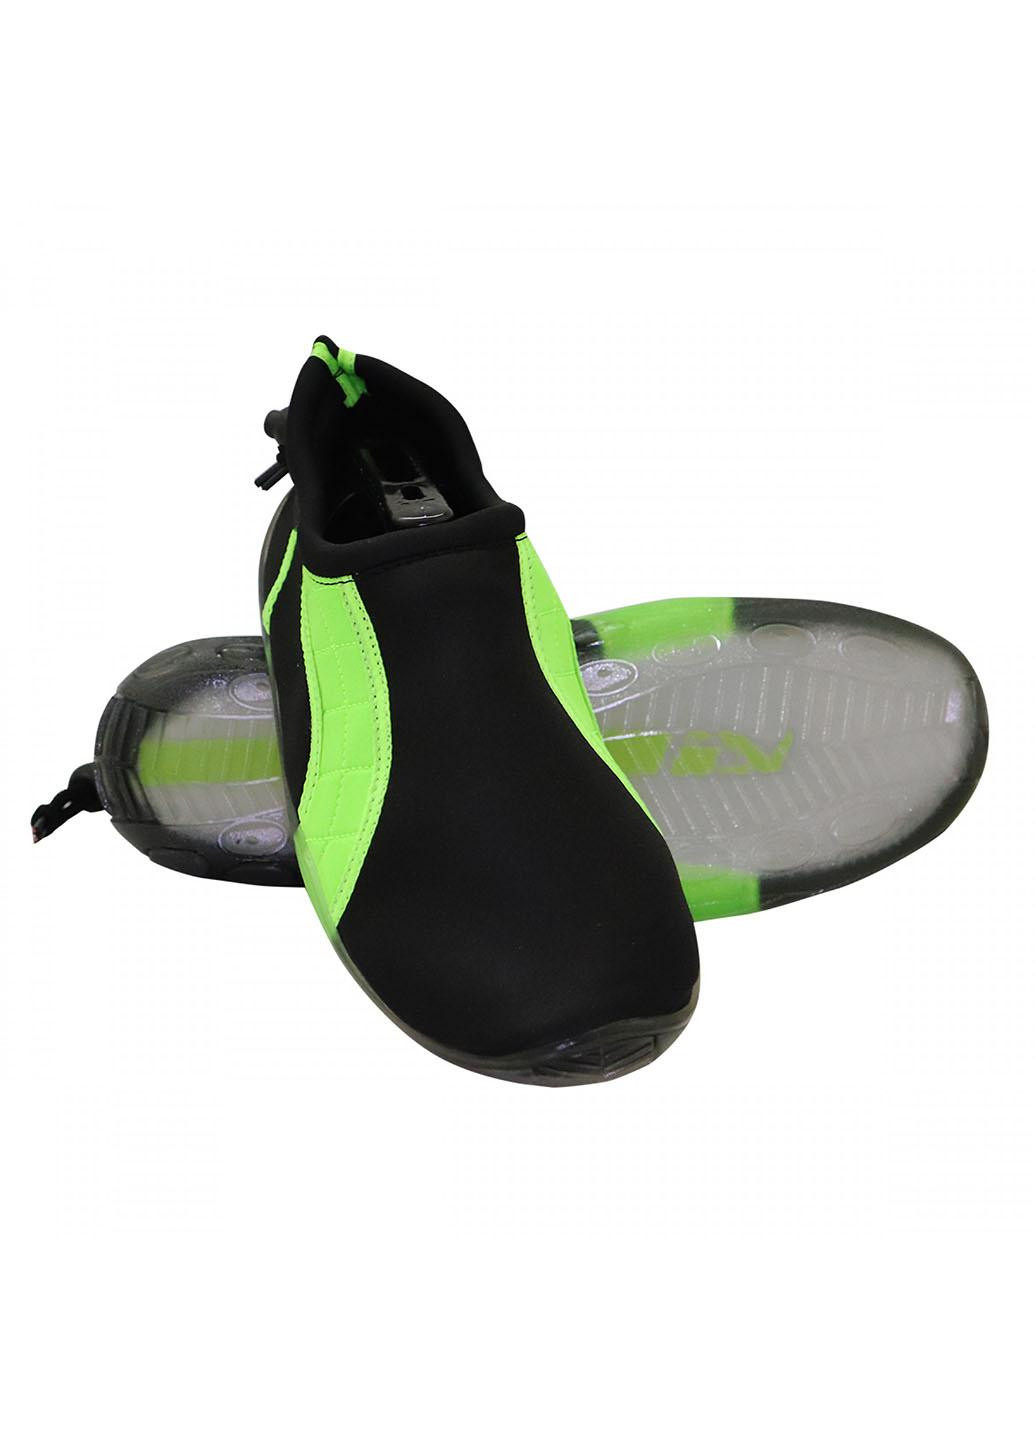 Взуття для пляжу і коралів (аквашузи) SV-GY0004-R42 Size 42 Black/Green SportVida (258486779)